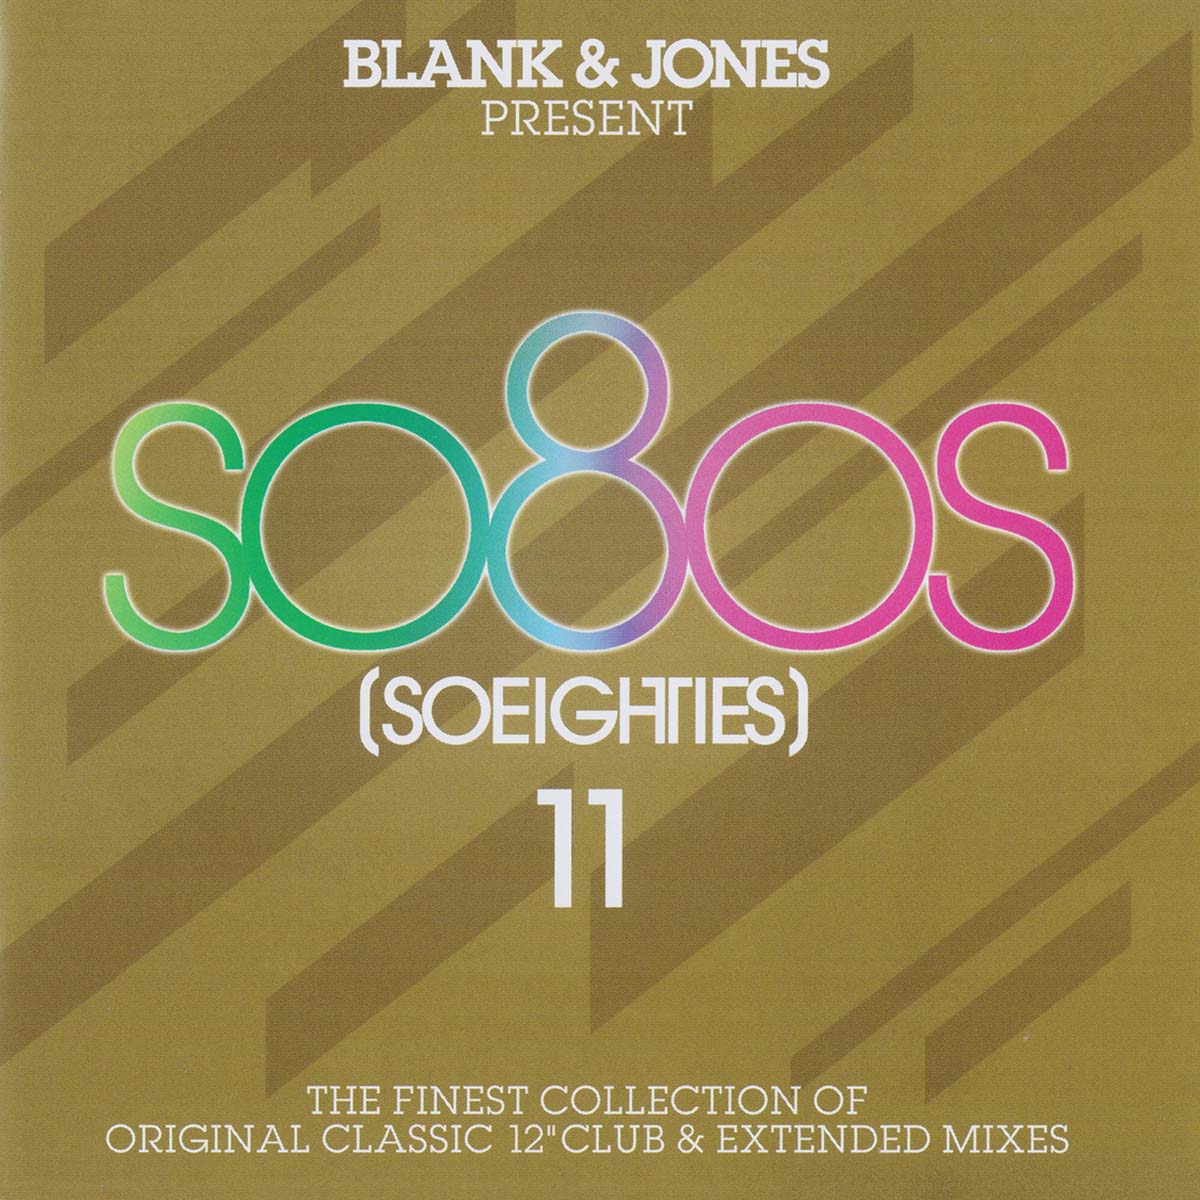 VA - Blank & Jones ‎– So80s (Soeighties) 11 / Soundcolours